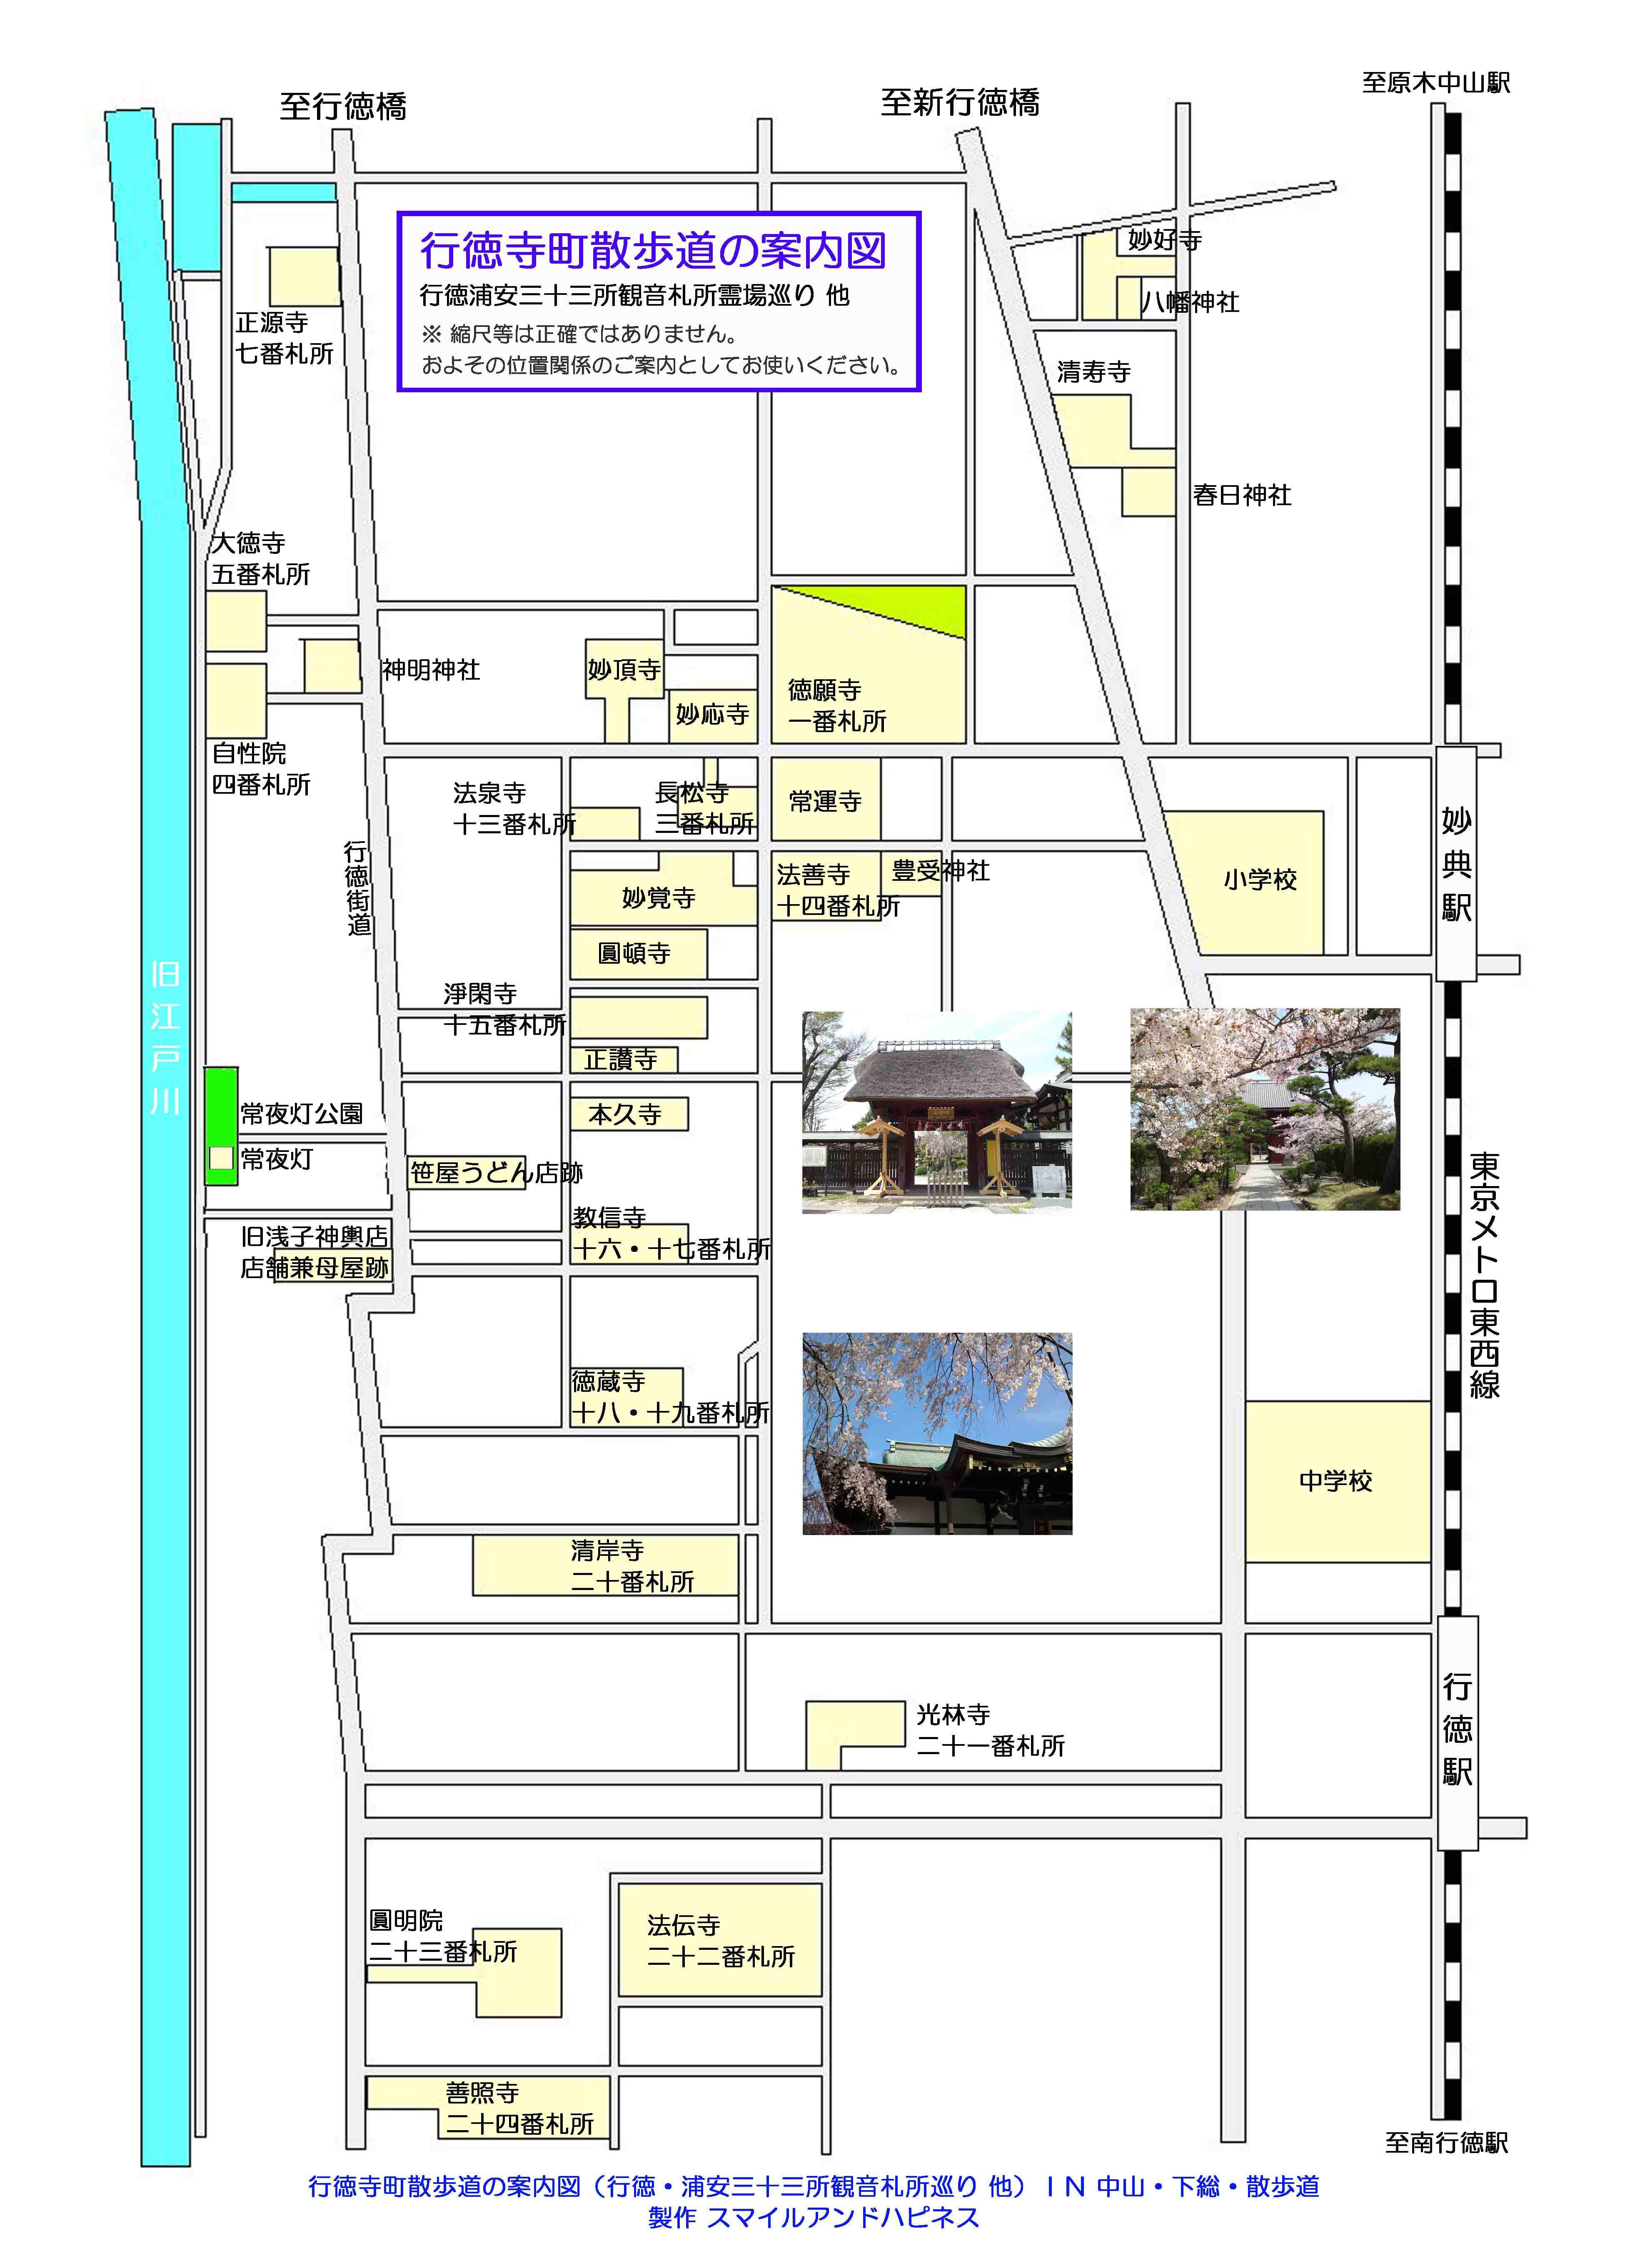 行徳寺町周辺散歩道の案内図